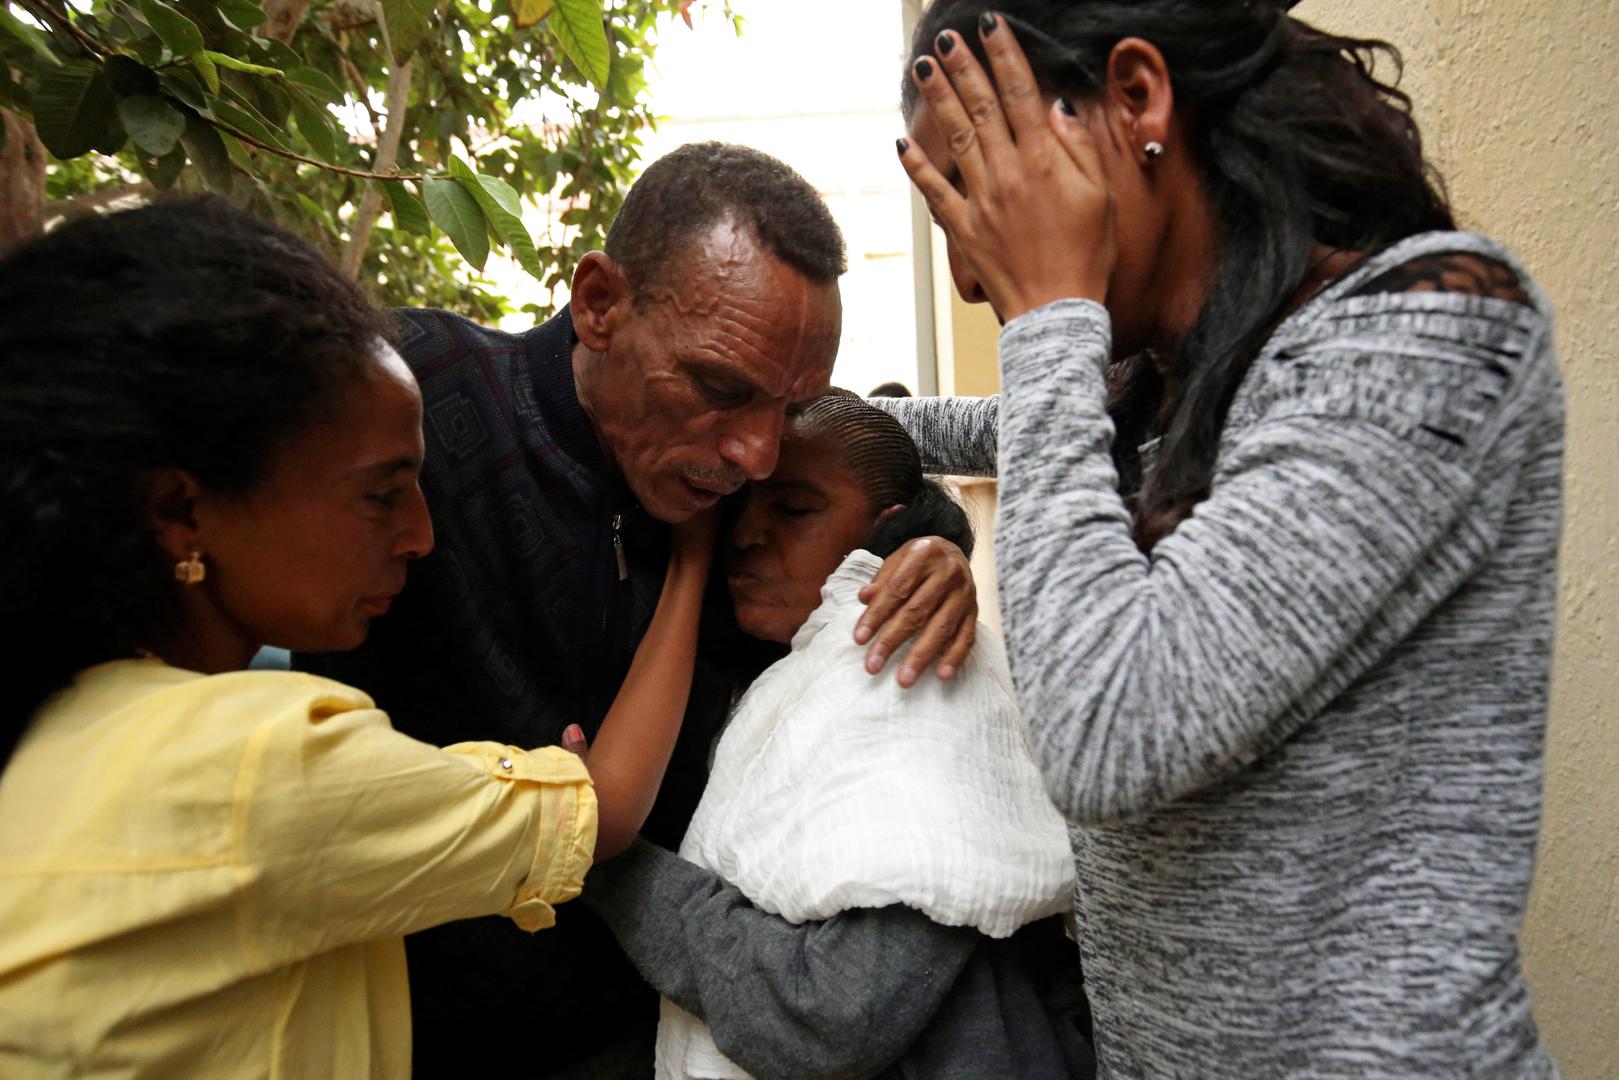 Kada je Addisalem shvatio da postoji mogućnost odlaska u Eritreju, ponovno je kontaktirao obitelj. Dogovorili su se sastati u kući od rođaka. Suprug, supruga i kćeri prvi put su se zagrlili nakon 18 godina. "Osjećam se kao da sam dobio na lutriji", rekao je Addisalem.